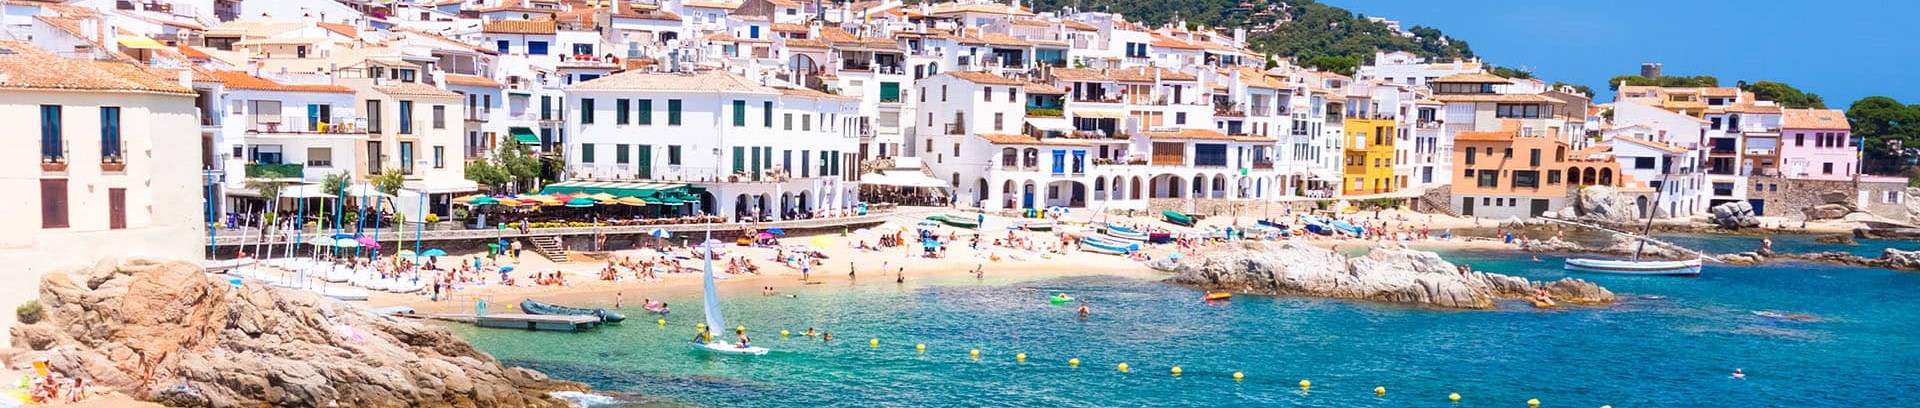 Billede af strand ved middelhavet, Spanien